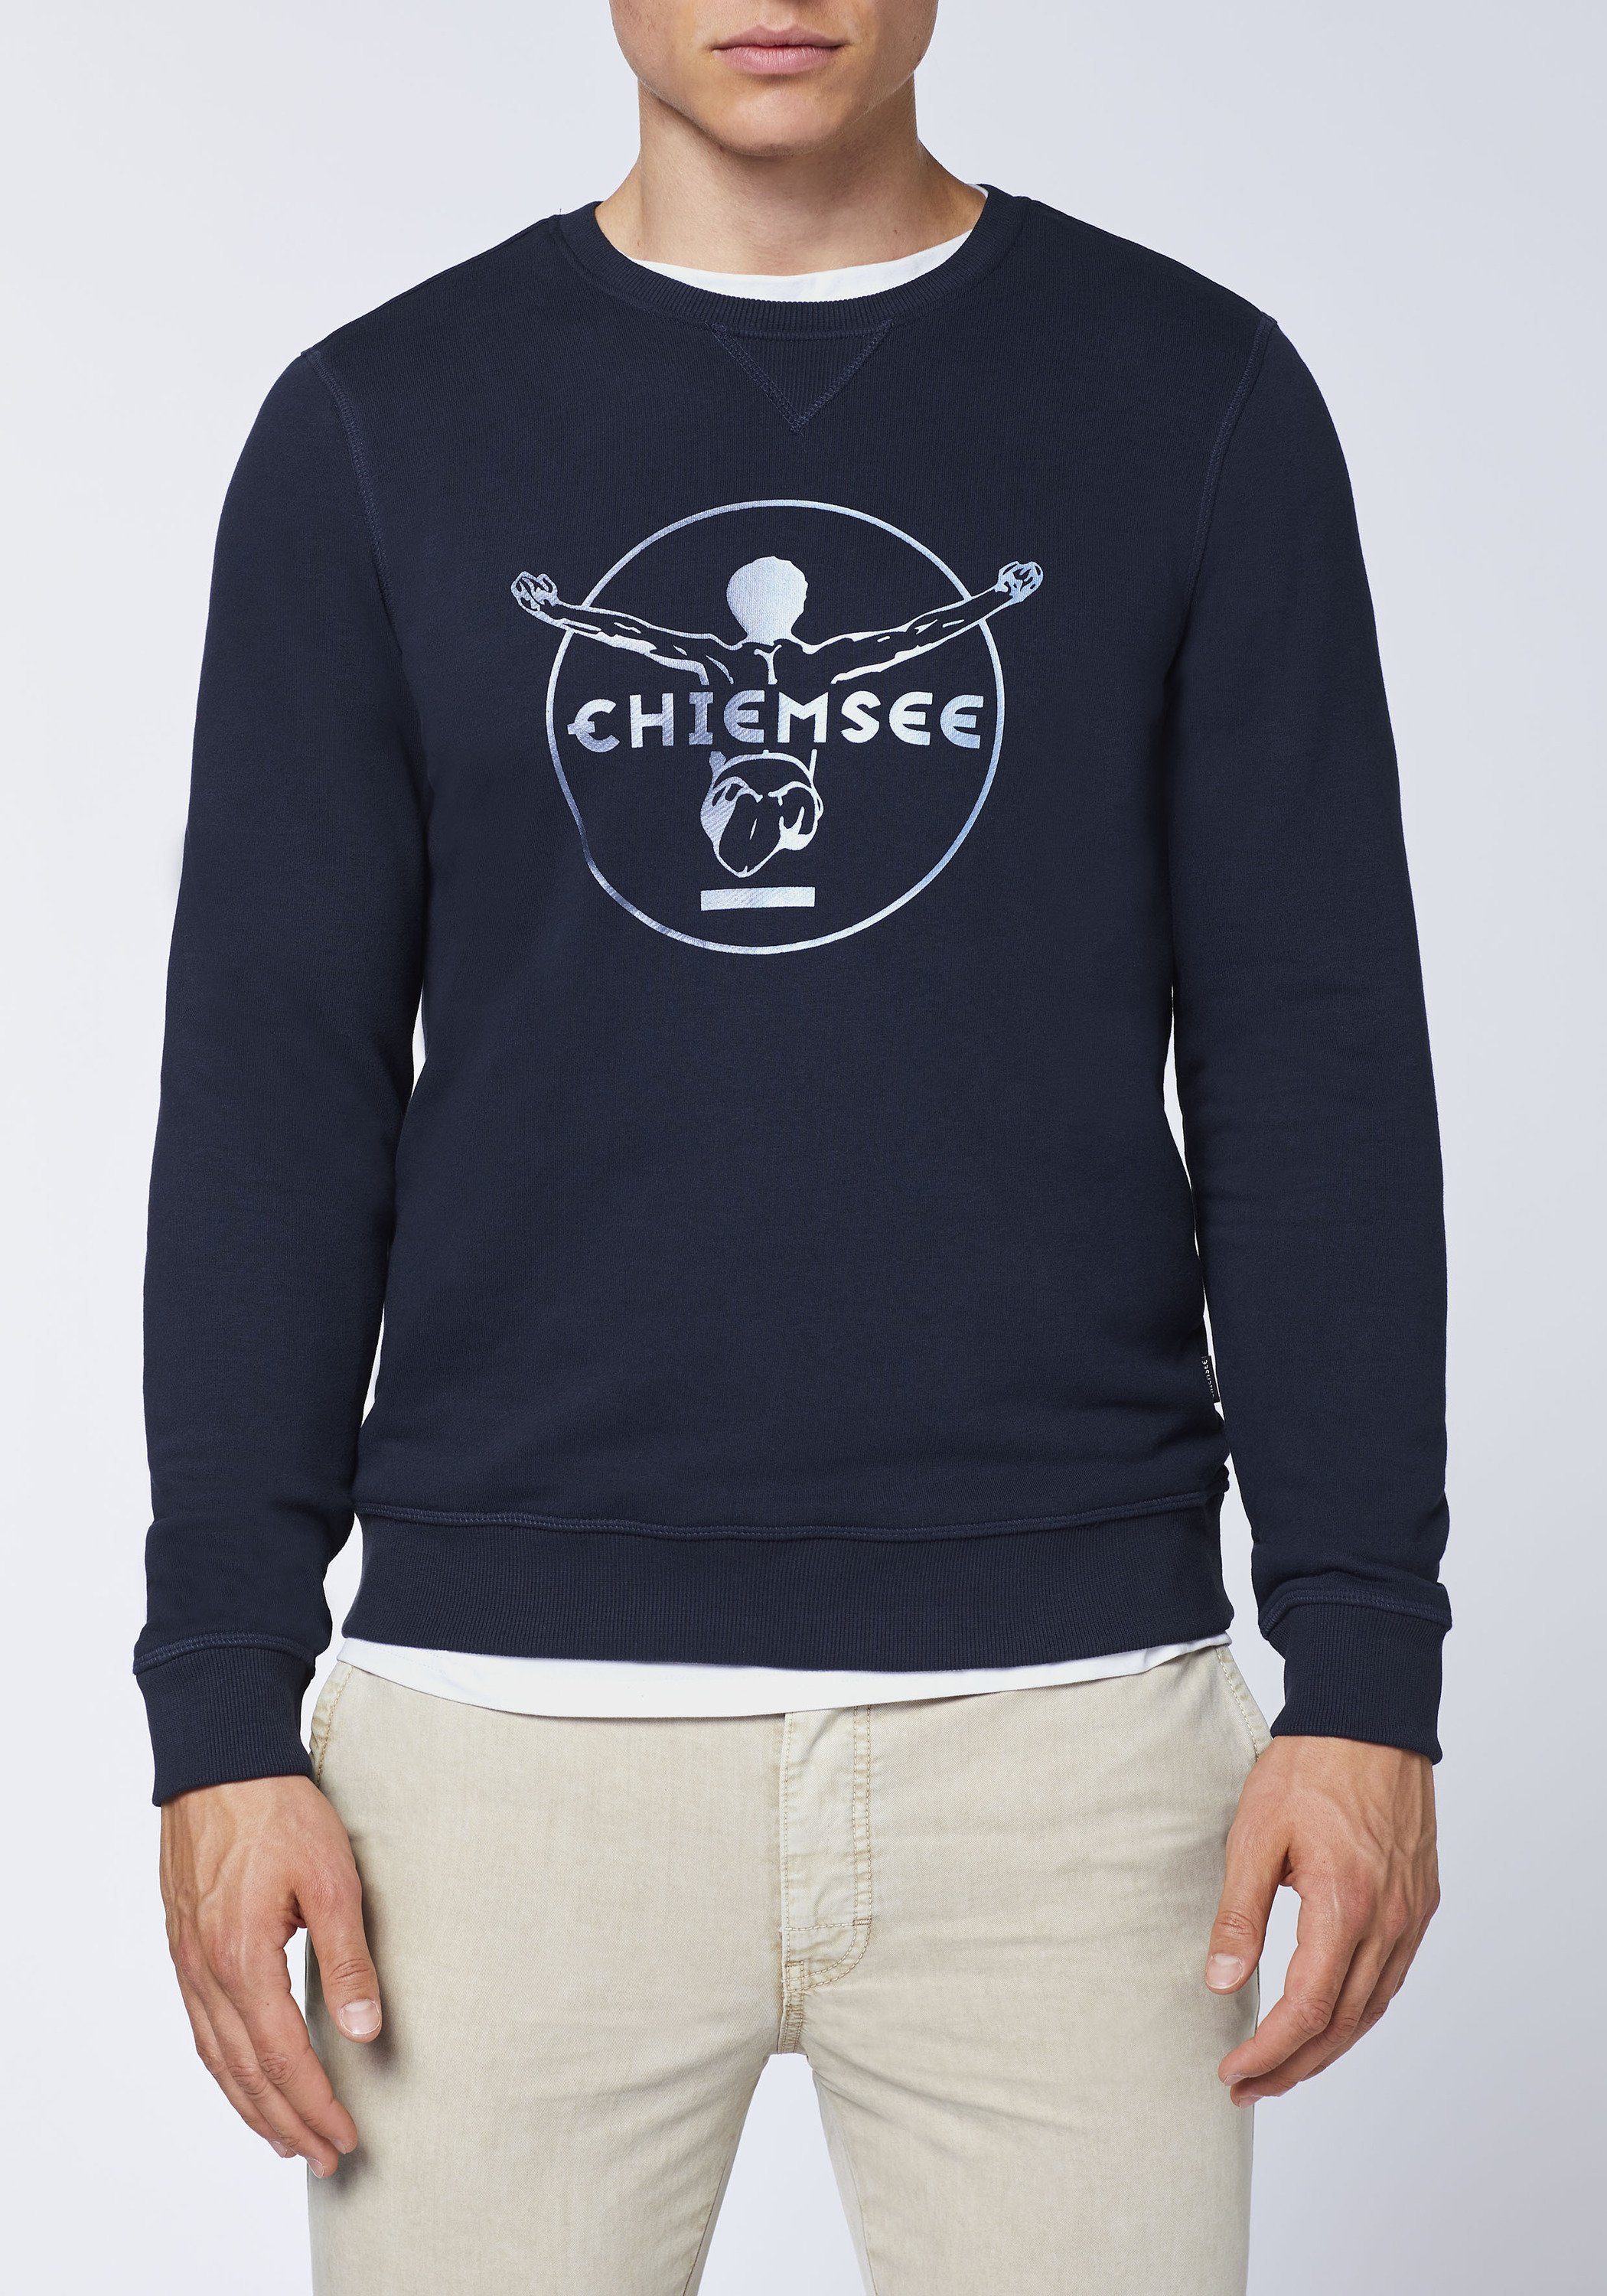 Sweatshirt dunkel Label-Look Chiemsee Sweater blau 1 im